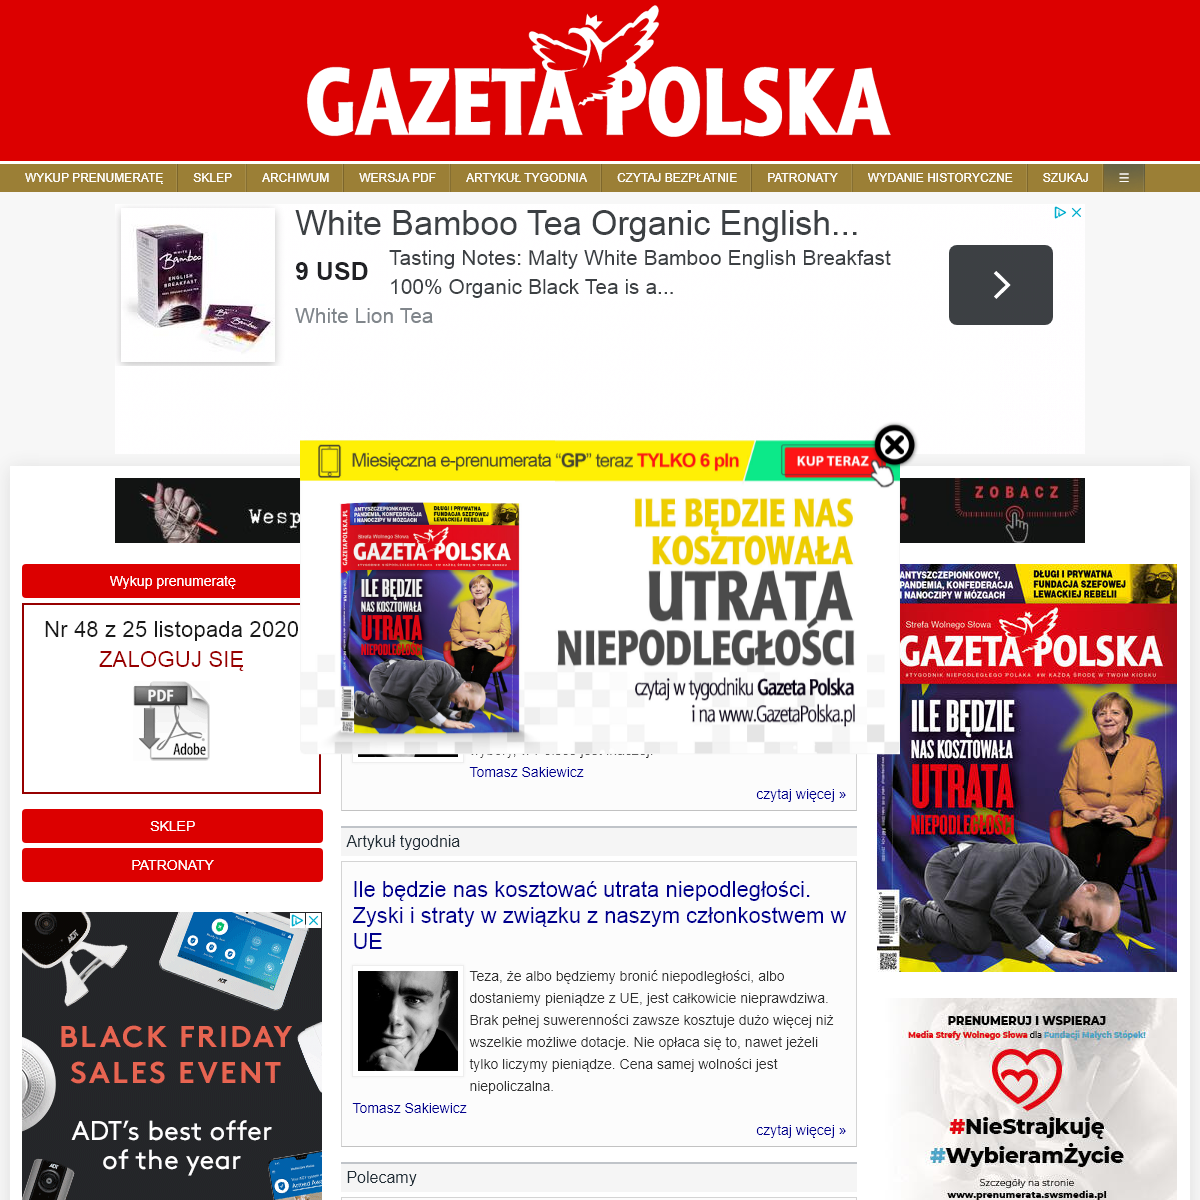 A complete backup of gazetapolska.pl